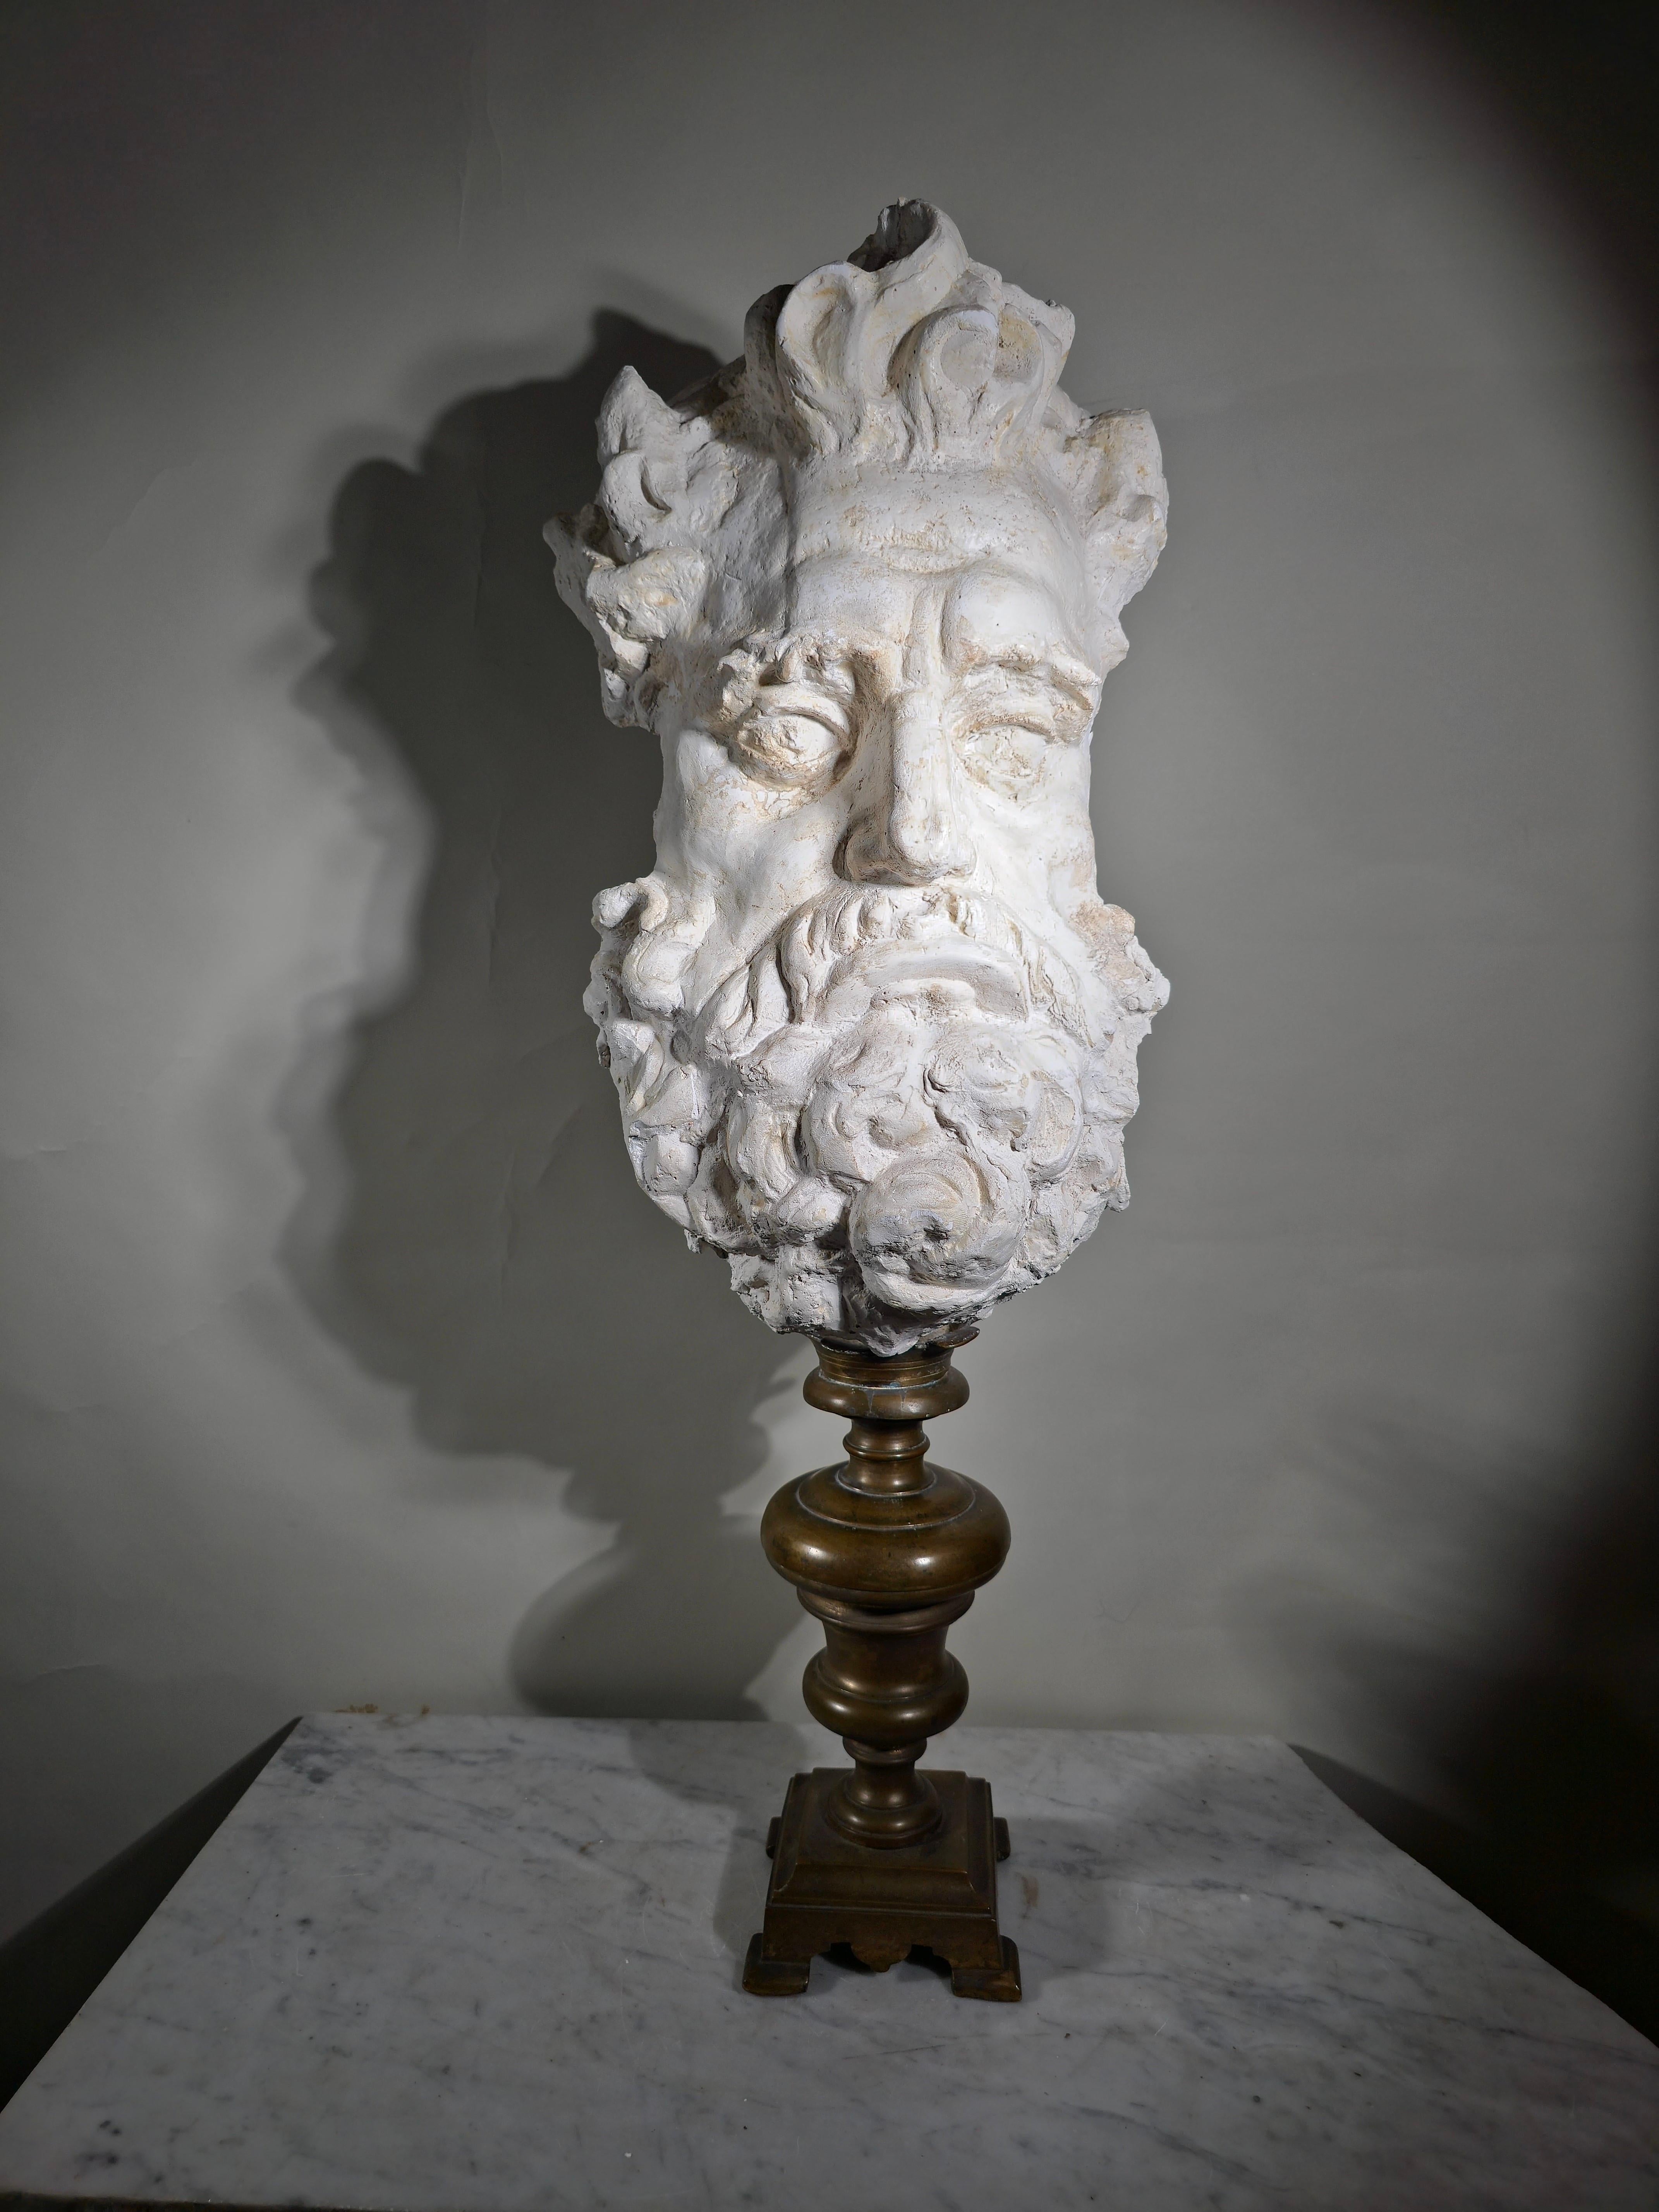 Diese spektakuläre Gipsskulptur, die das majestätische Gesicht des Zeus darstellt, ist ein wahres Juwel aus dem 19. Jahrhundert. Sie wurde zu dieser Zeit in Italien hergestellt und zeigt die imposante Präsenz und göttliche Macht des Götterkönigs aus